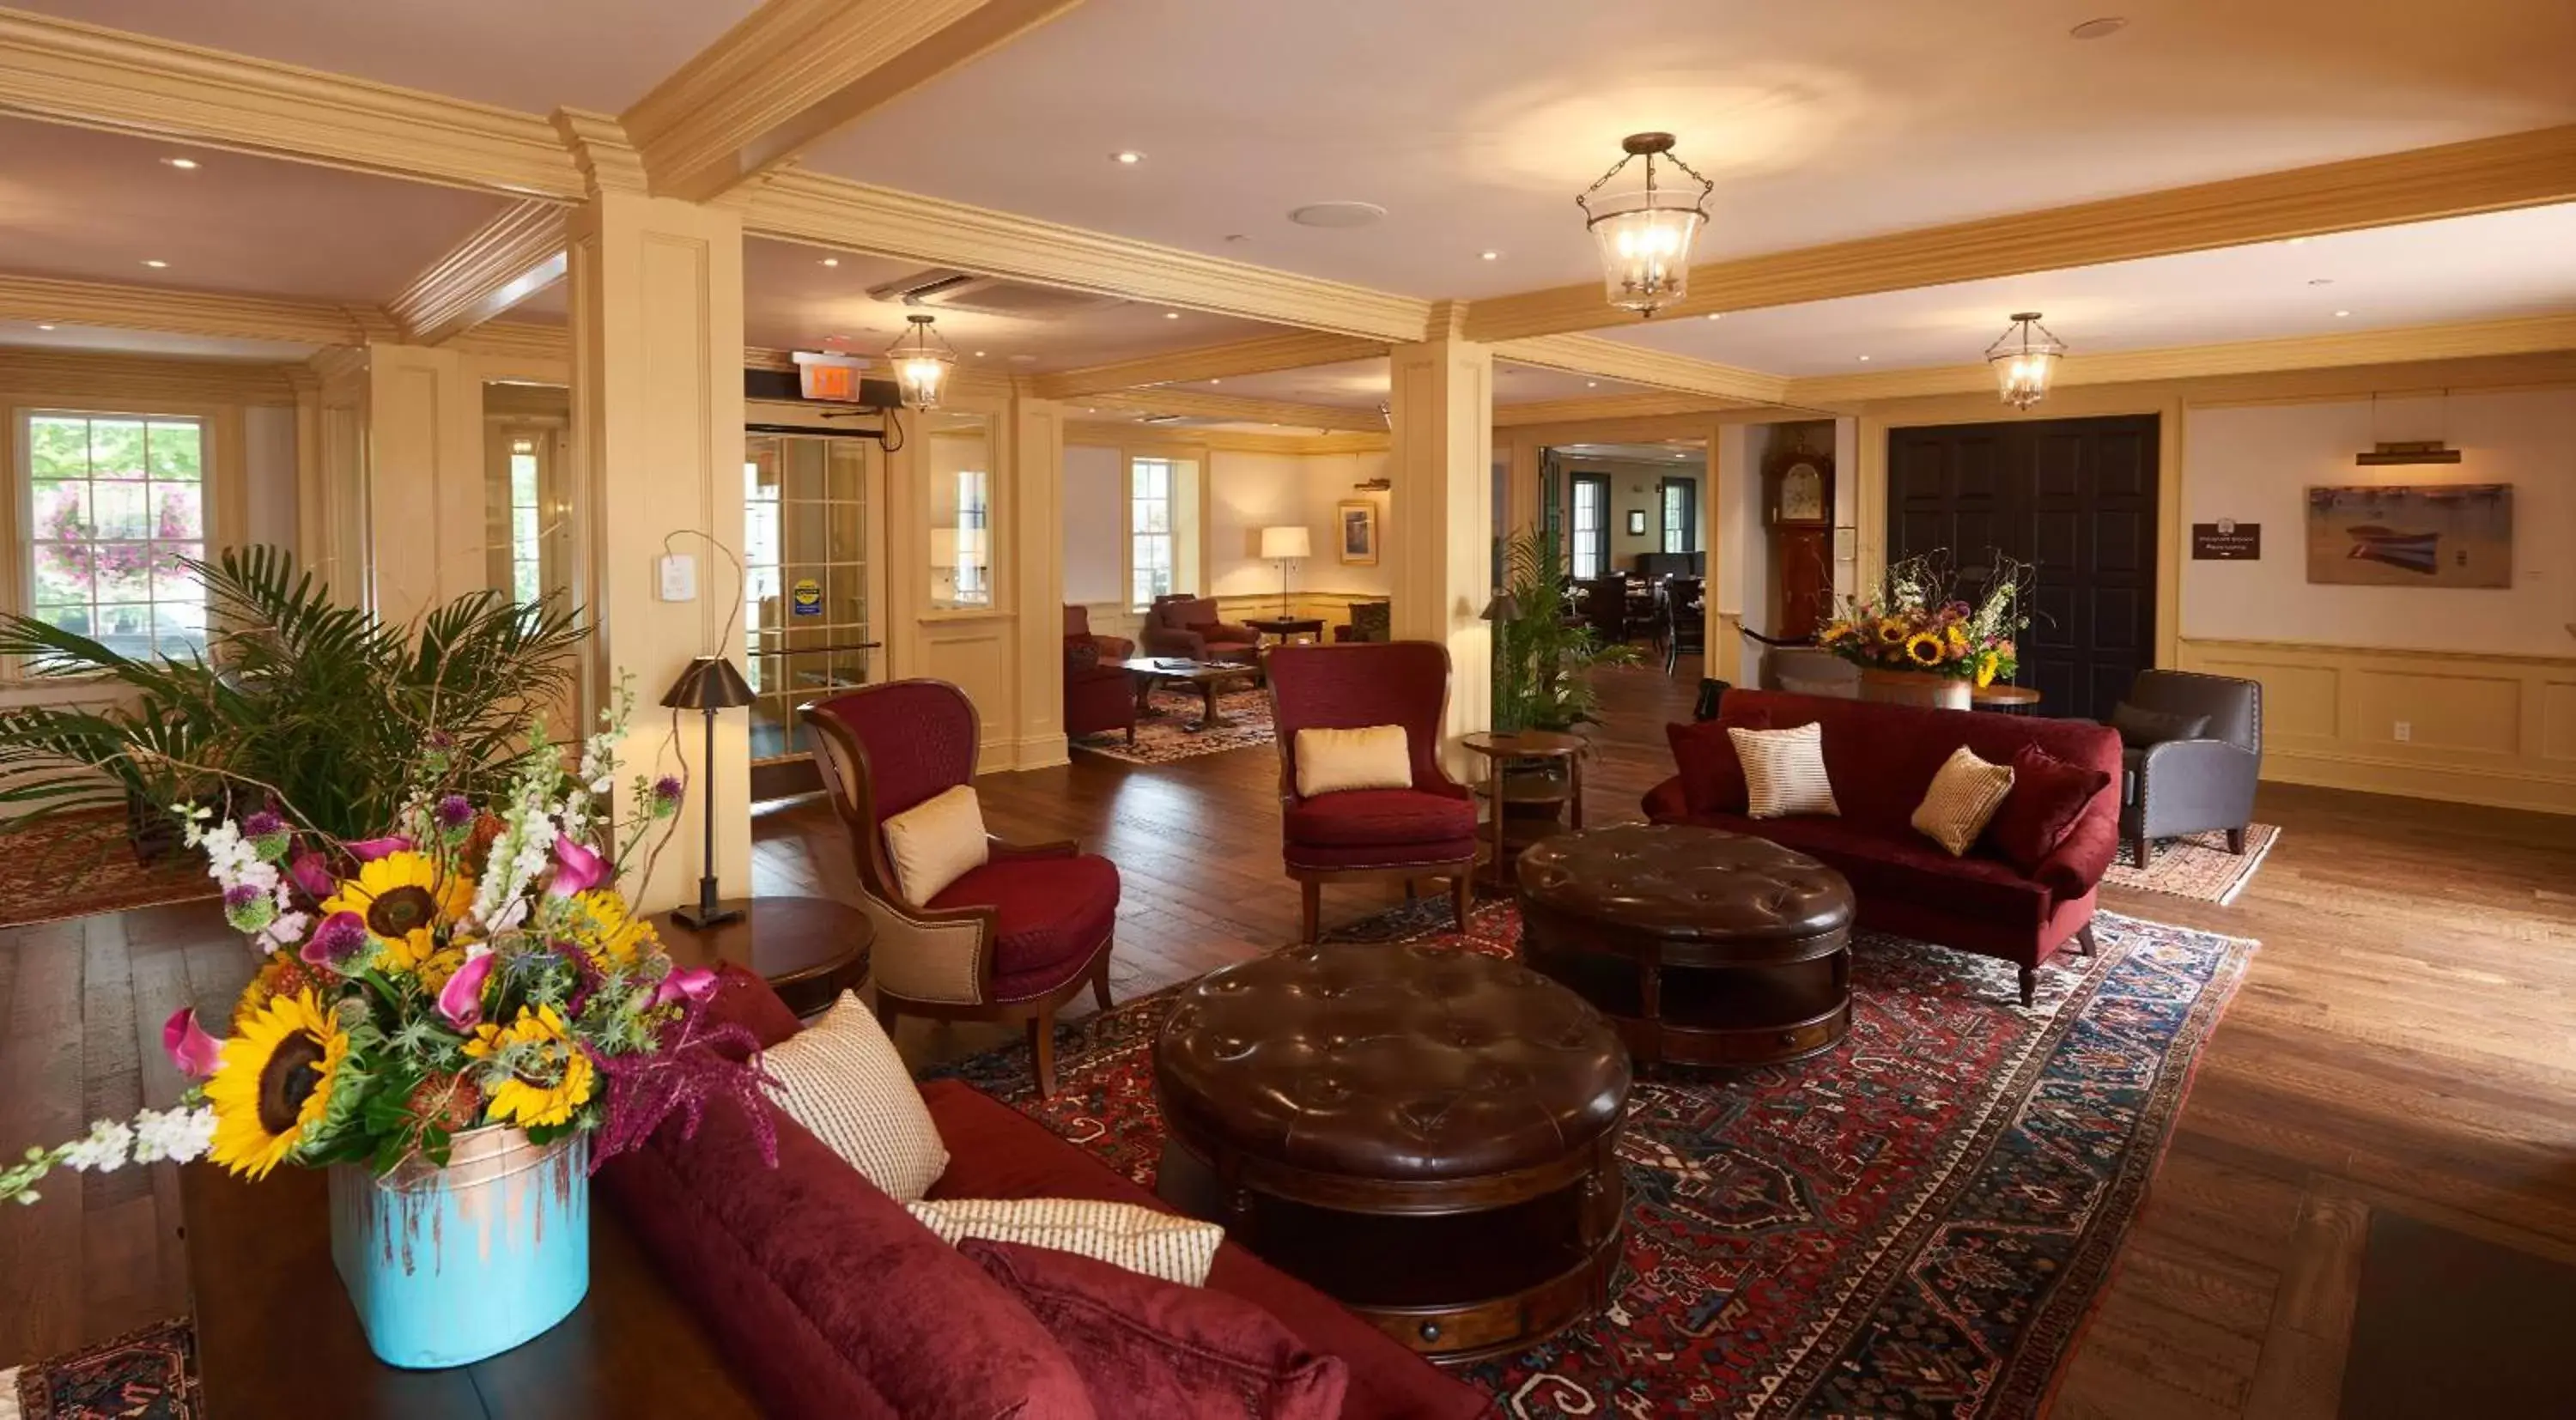 Lobby or reception in The Groton Inn